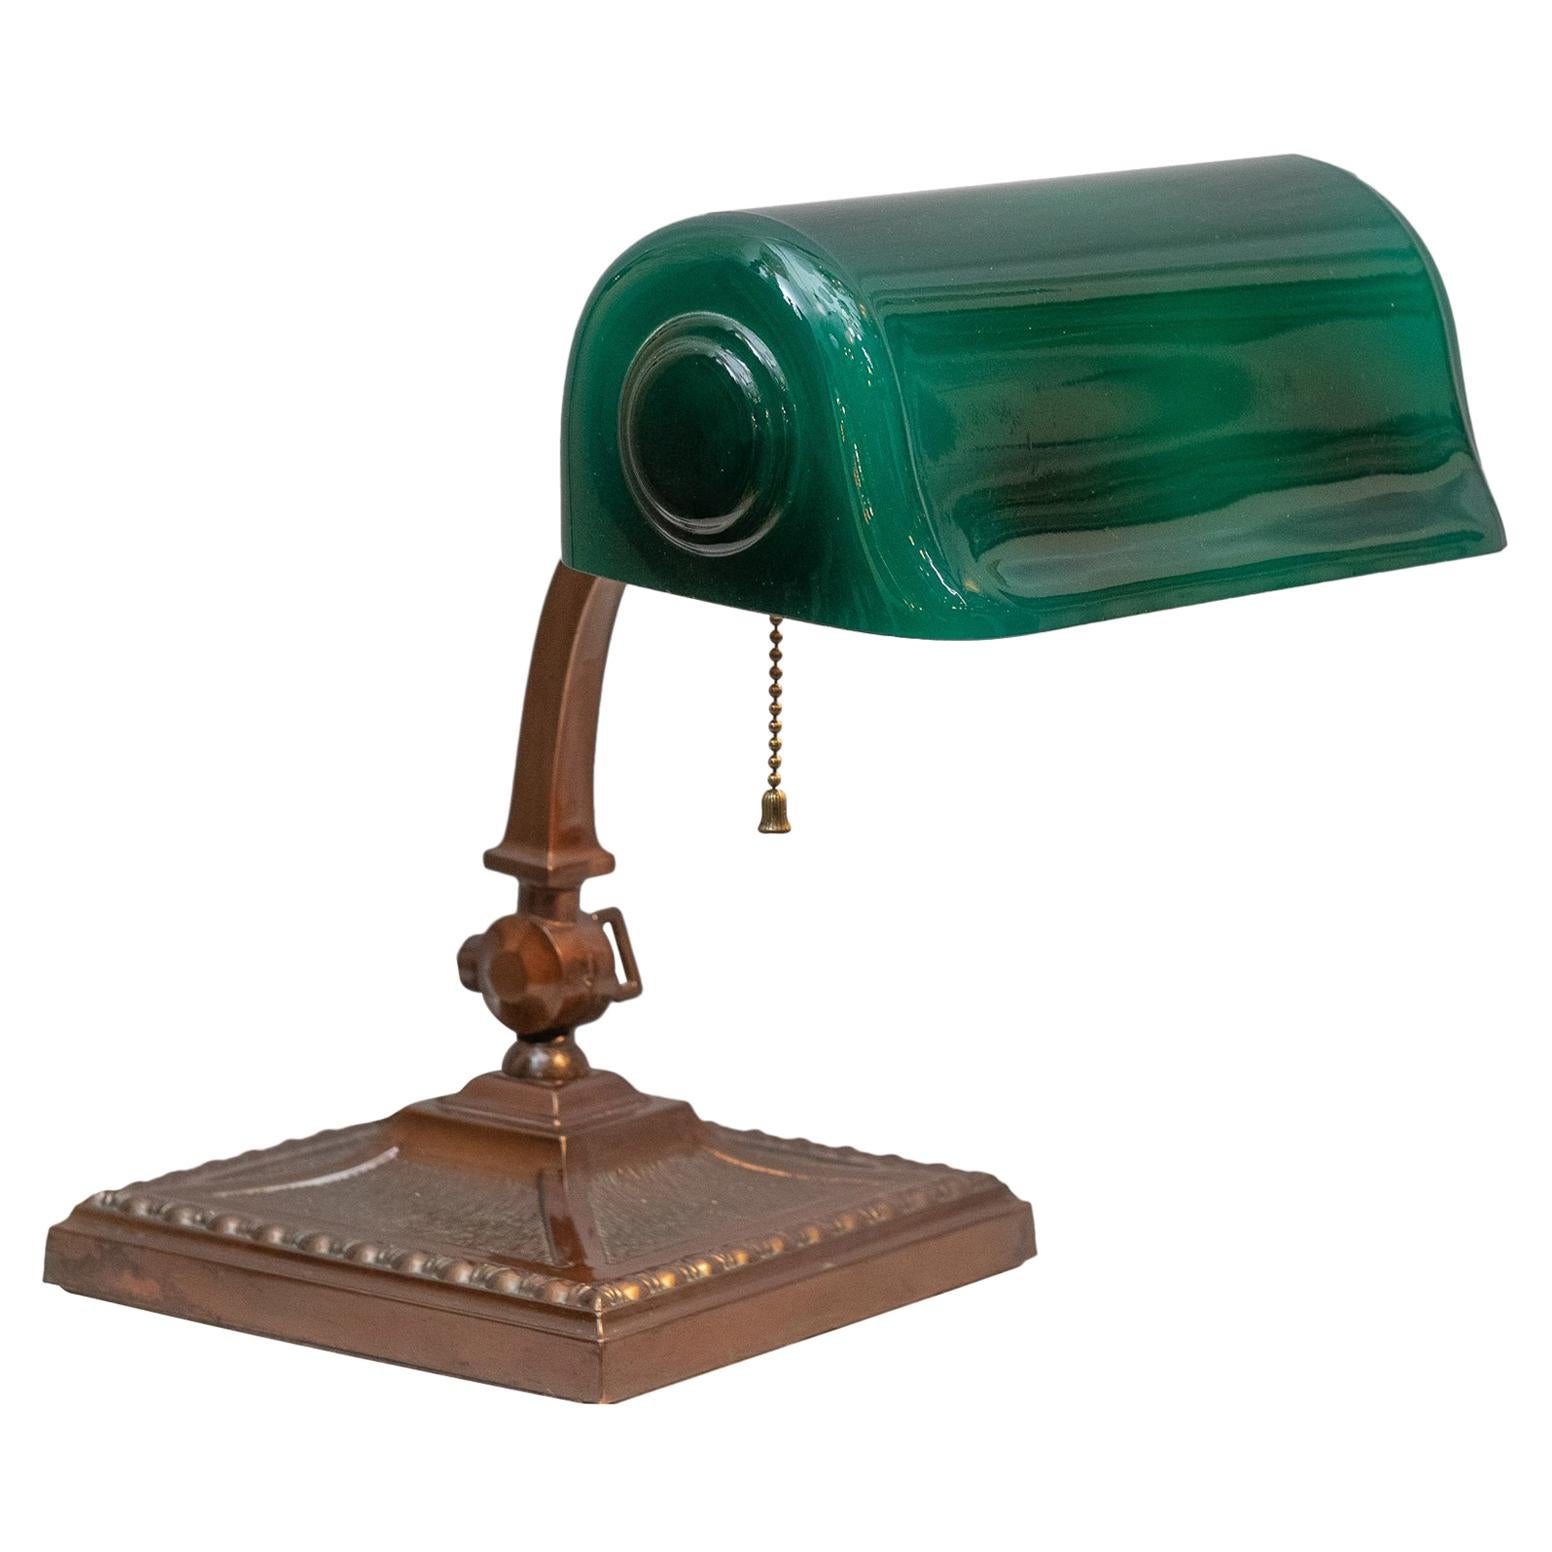 Antique Green Shade Banker's Lamp, Signed Verdelite